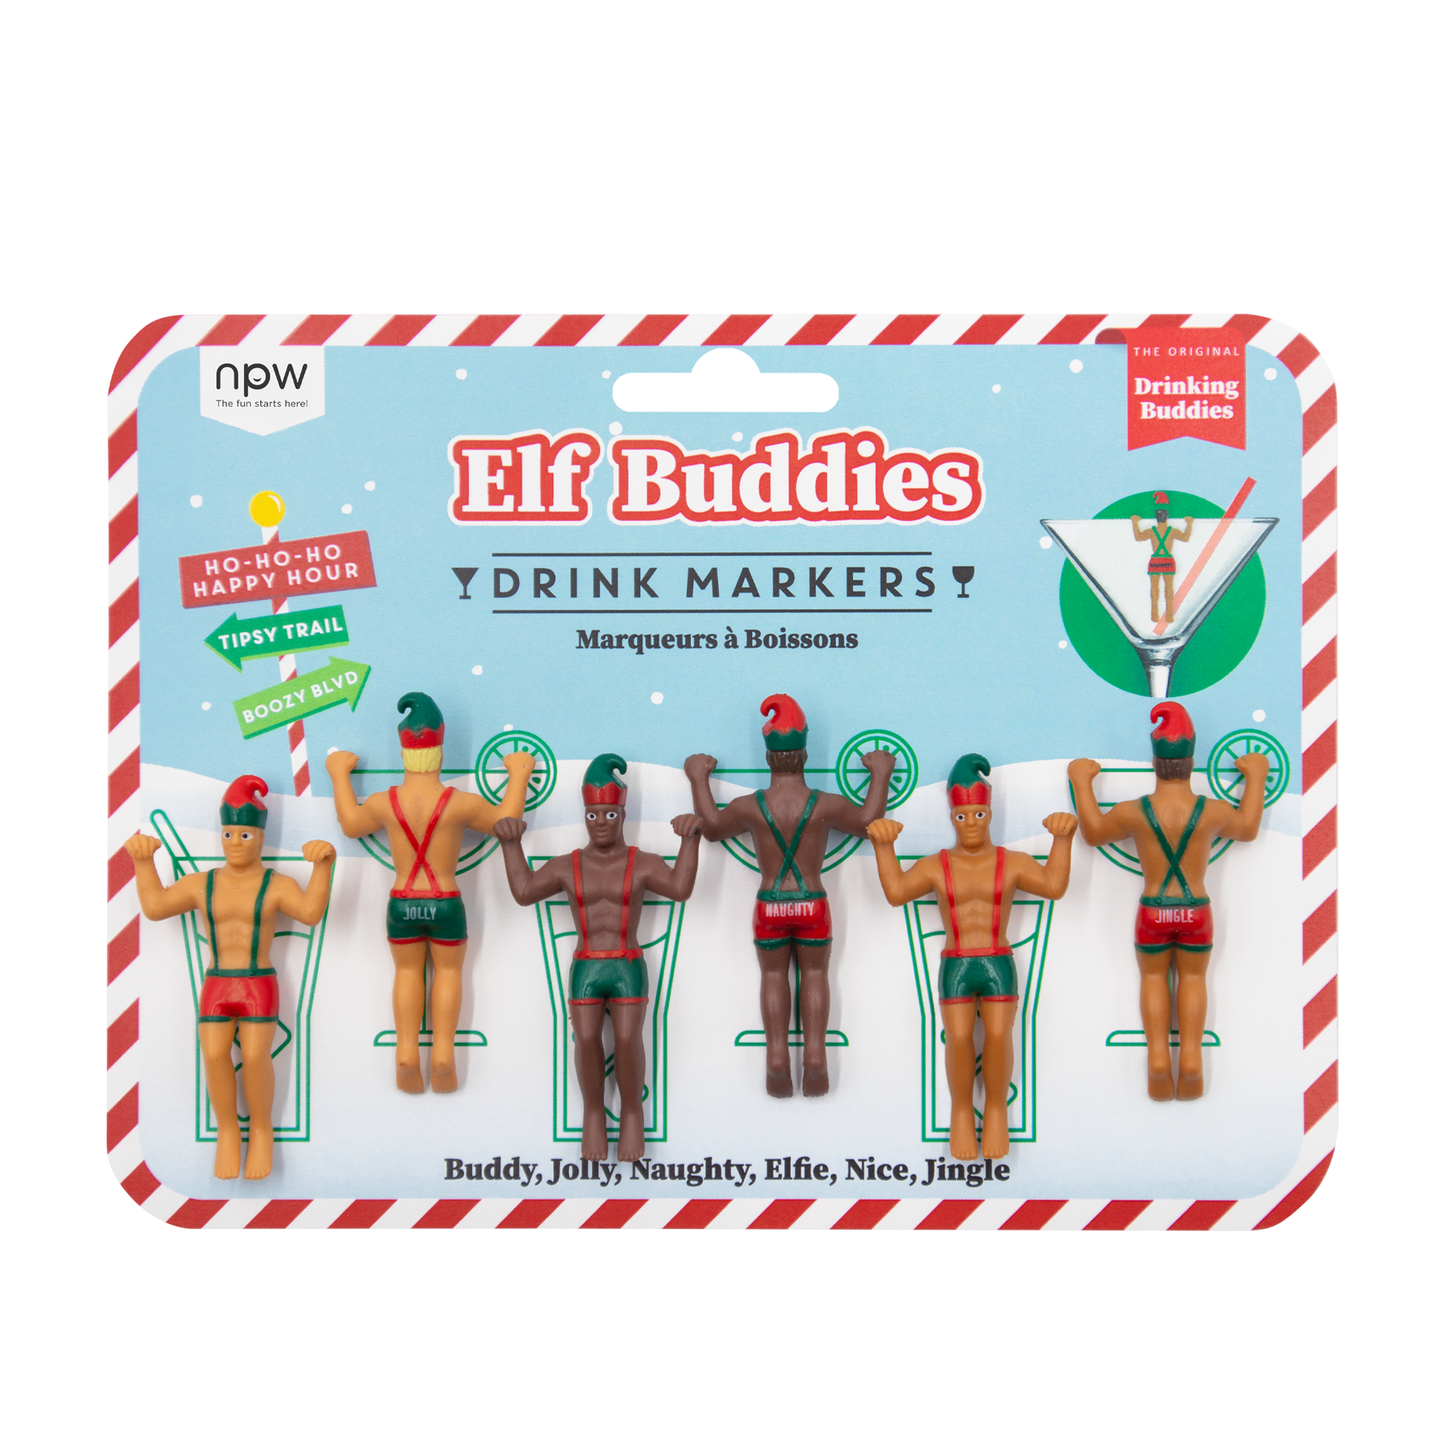 Drinking Buddies Elf Buddies